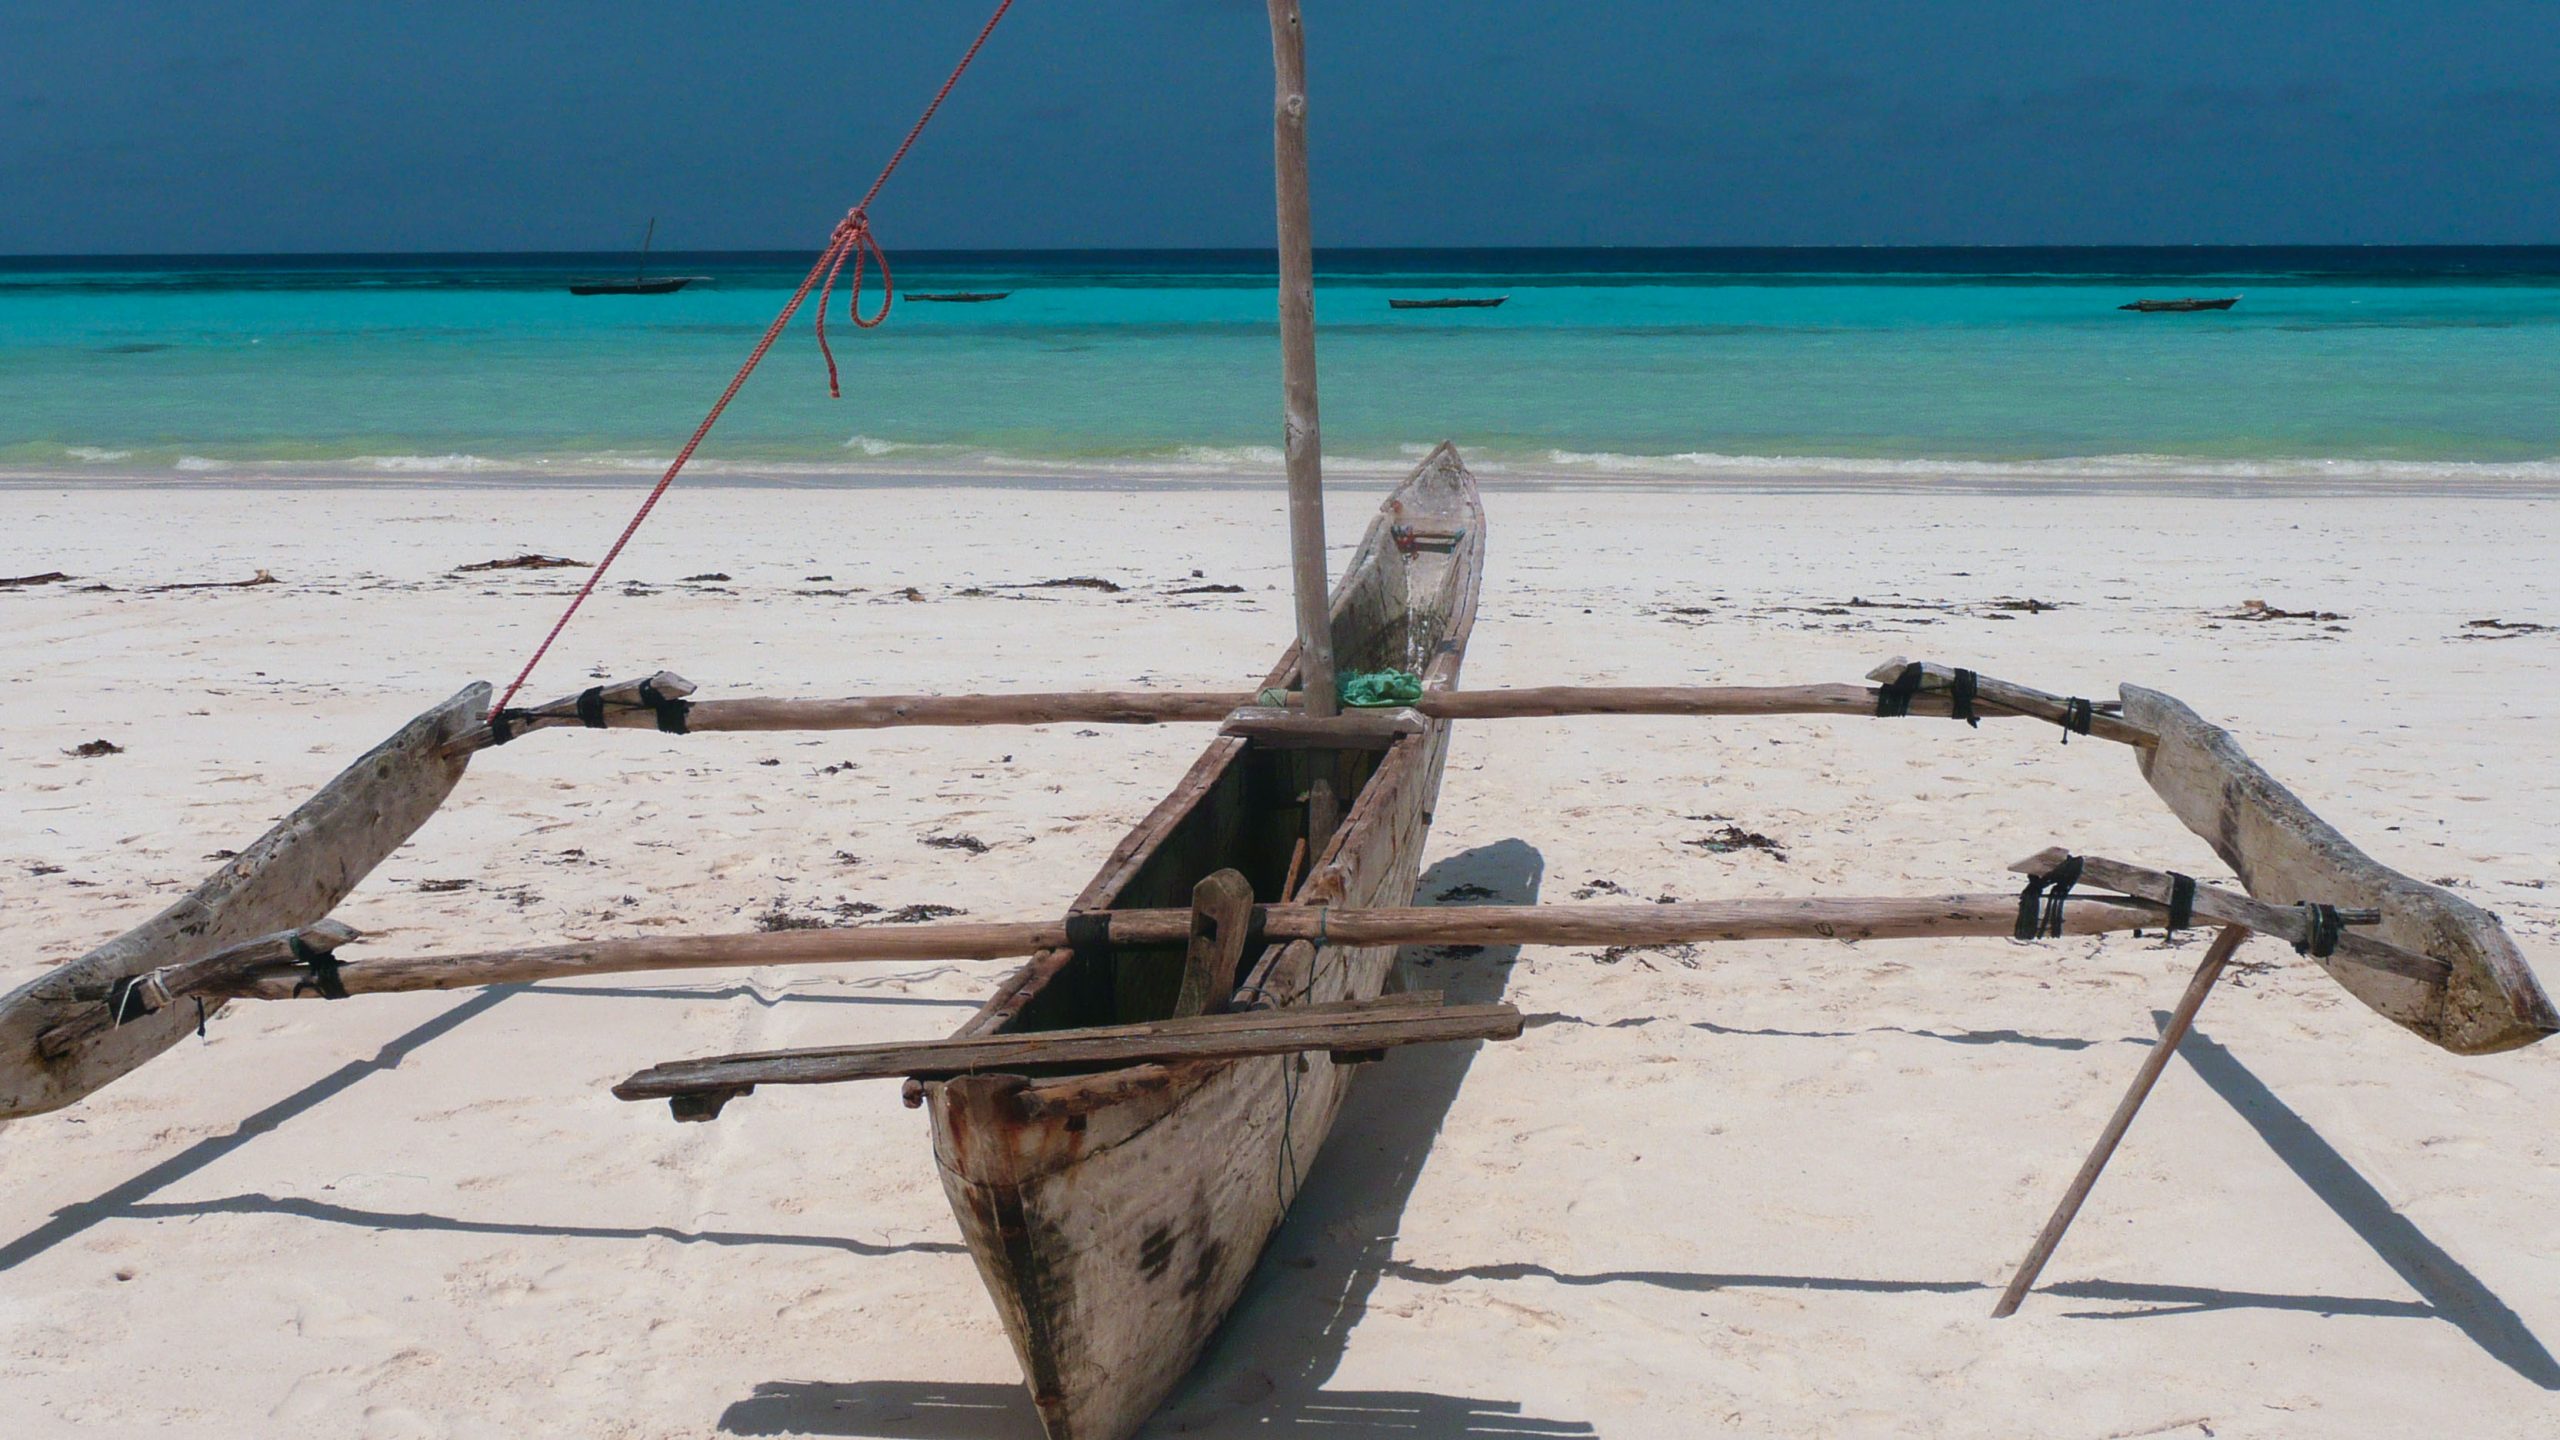 Dugout canoe on beach of island in archipelago of Zanzibar Tanzania